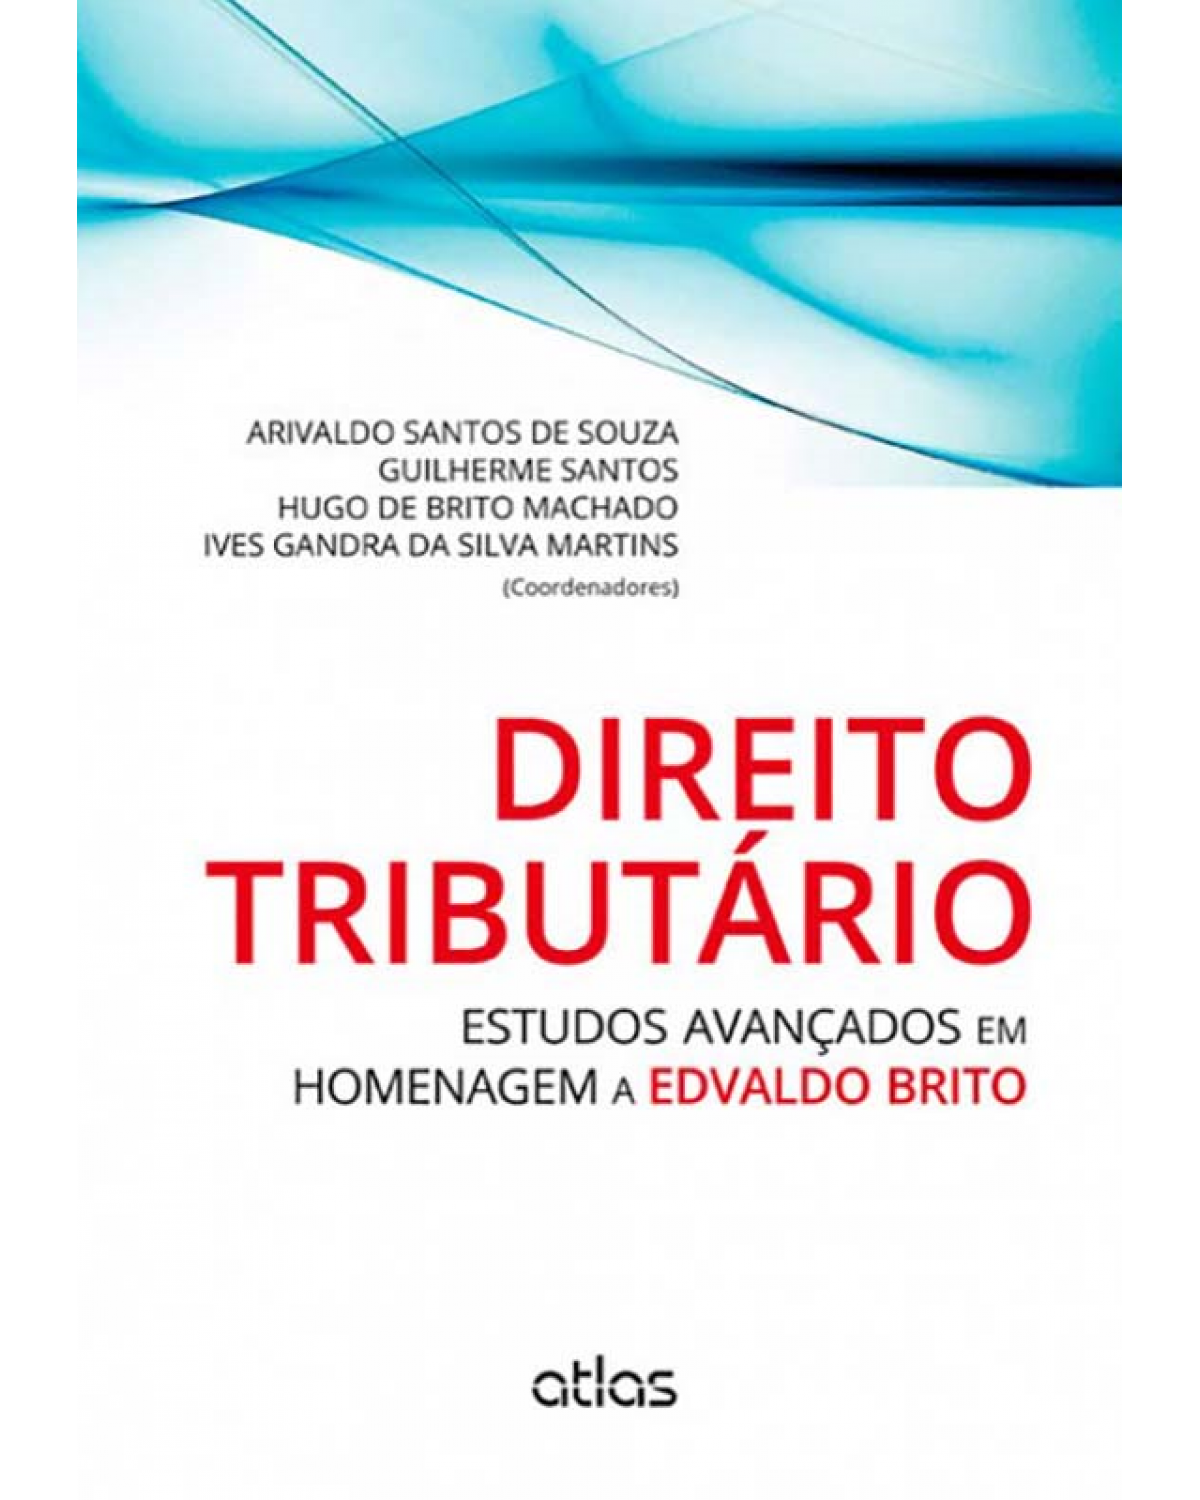 Direito tributário - Estudos avançados em homenagem a Edvaldo Brito - 1ª Edição | 2014